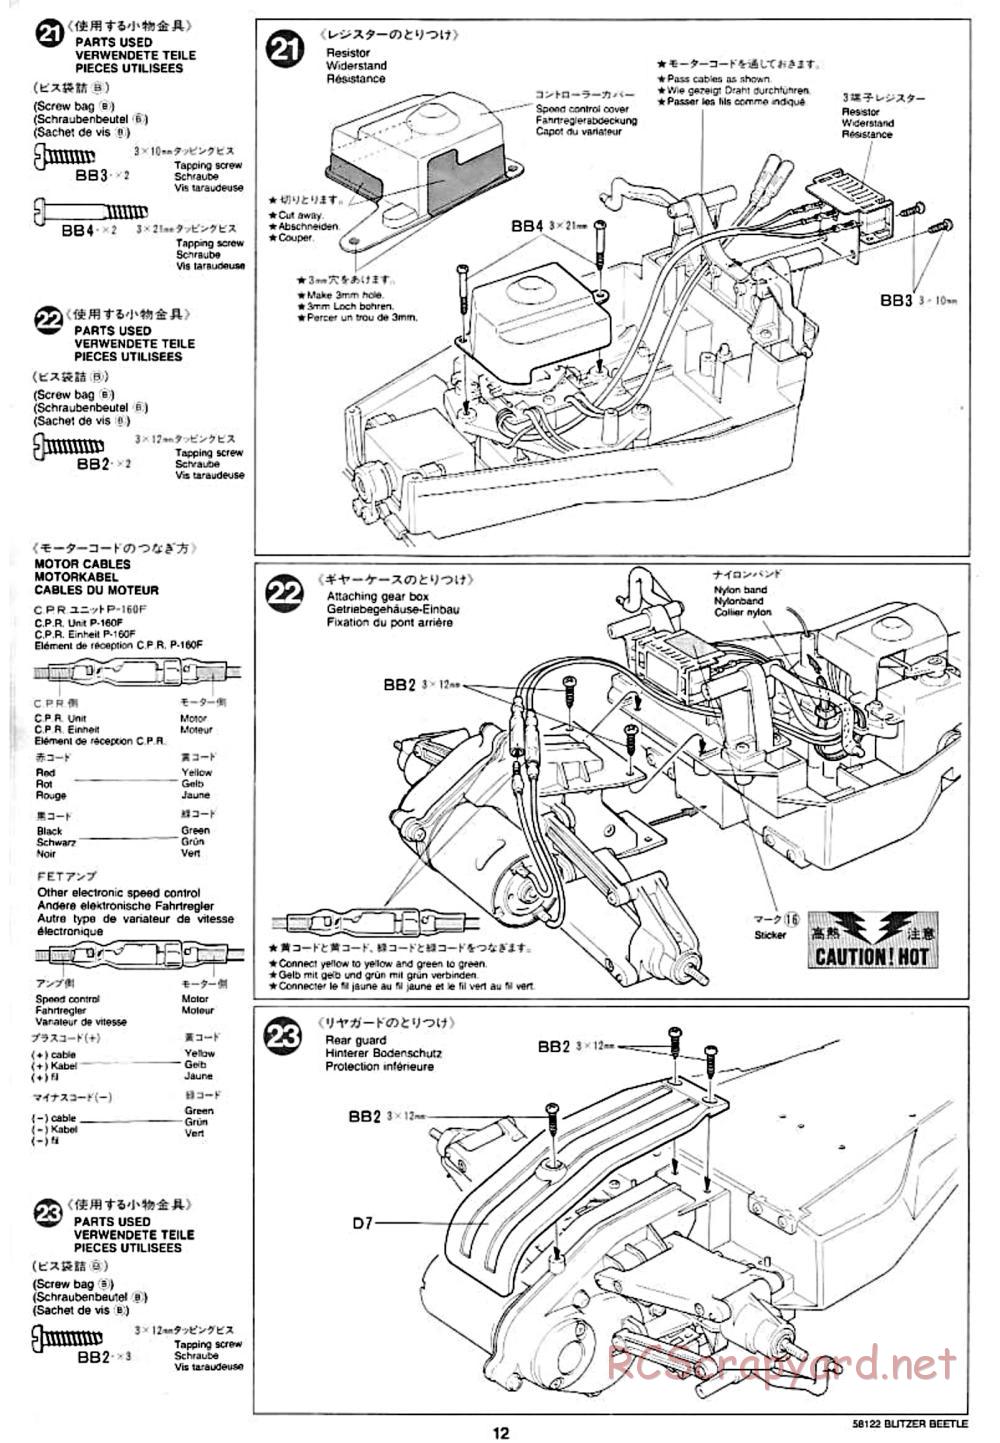 Tamiya - Blitzer Beetle Chassis - Manual - Page 12